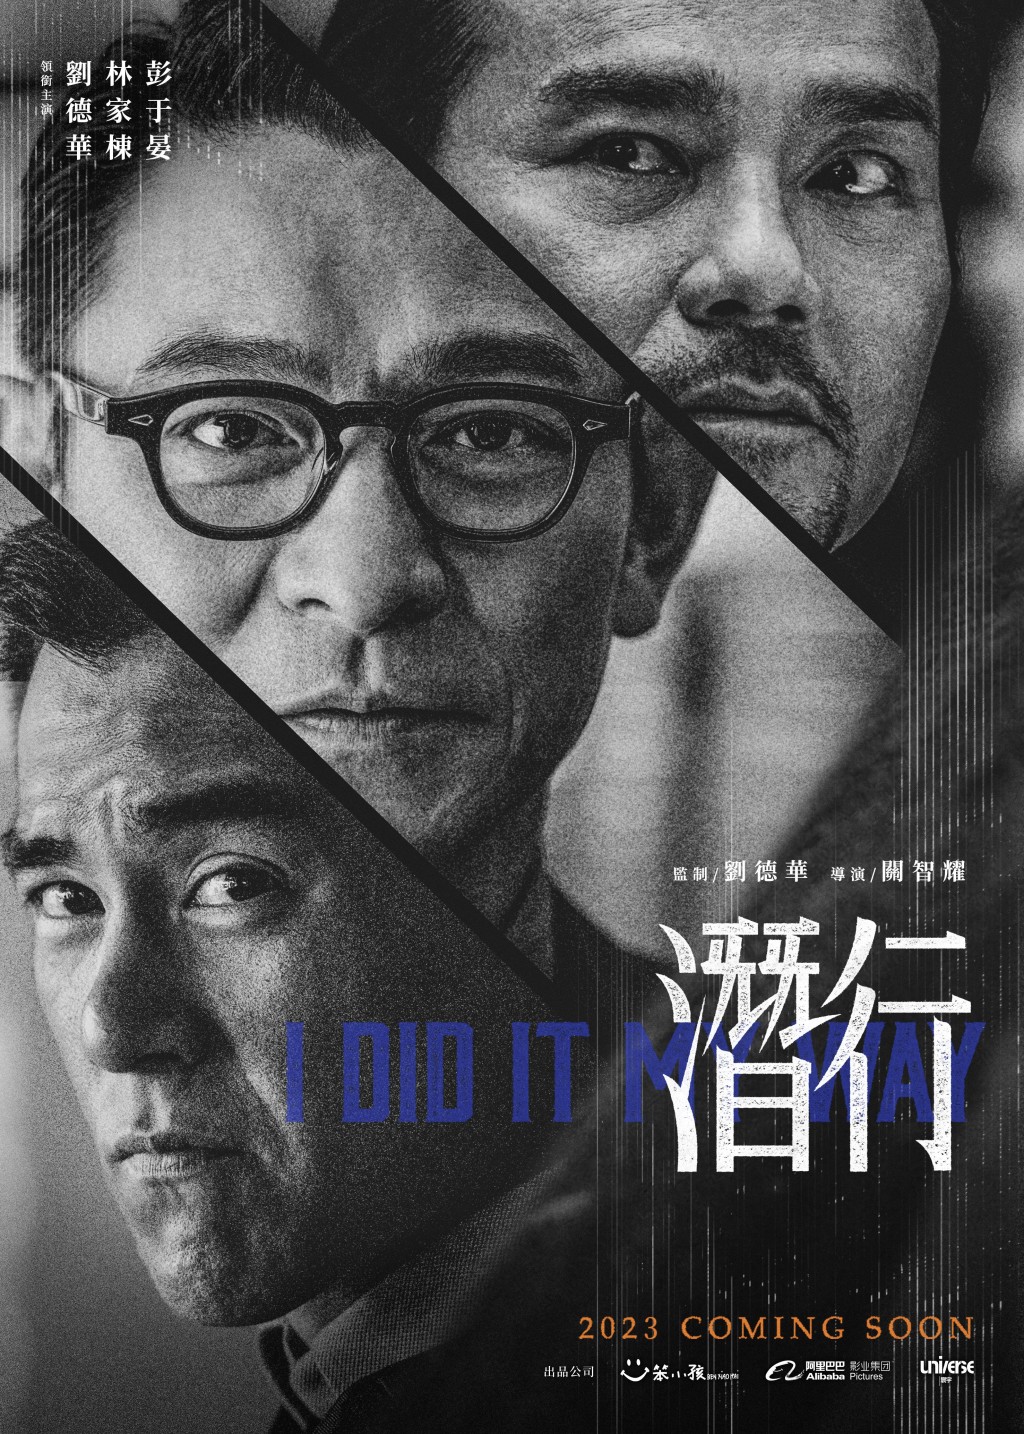 刘德华监制并联同林家栋、彭于晏主演的电影《潜行》发布官方海报。